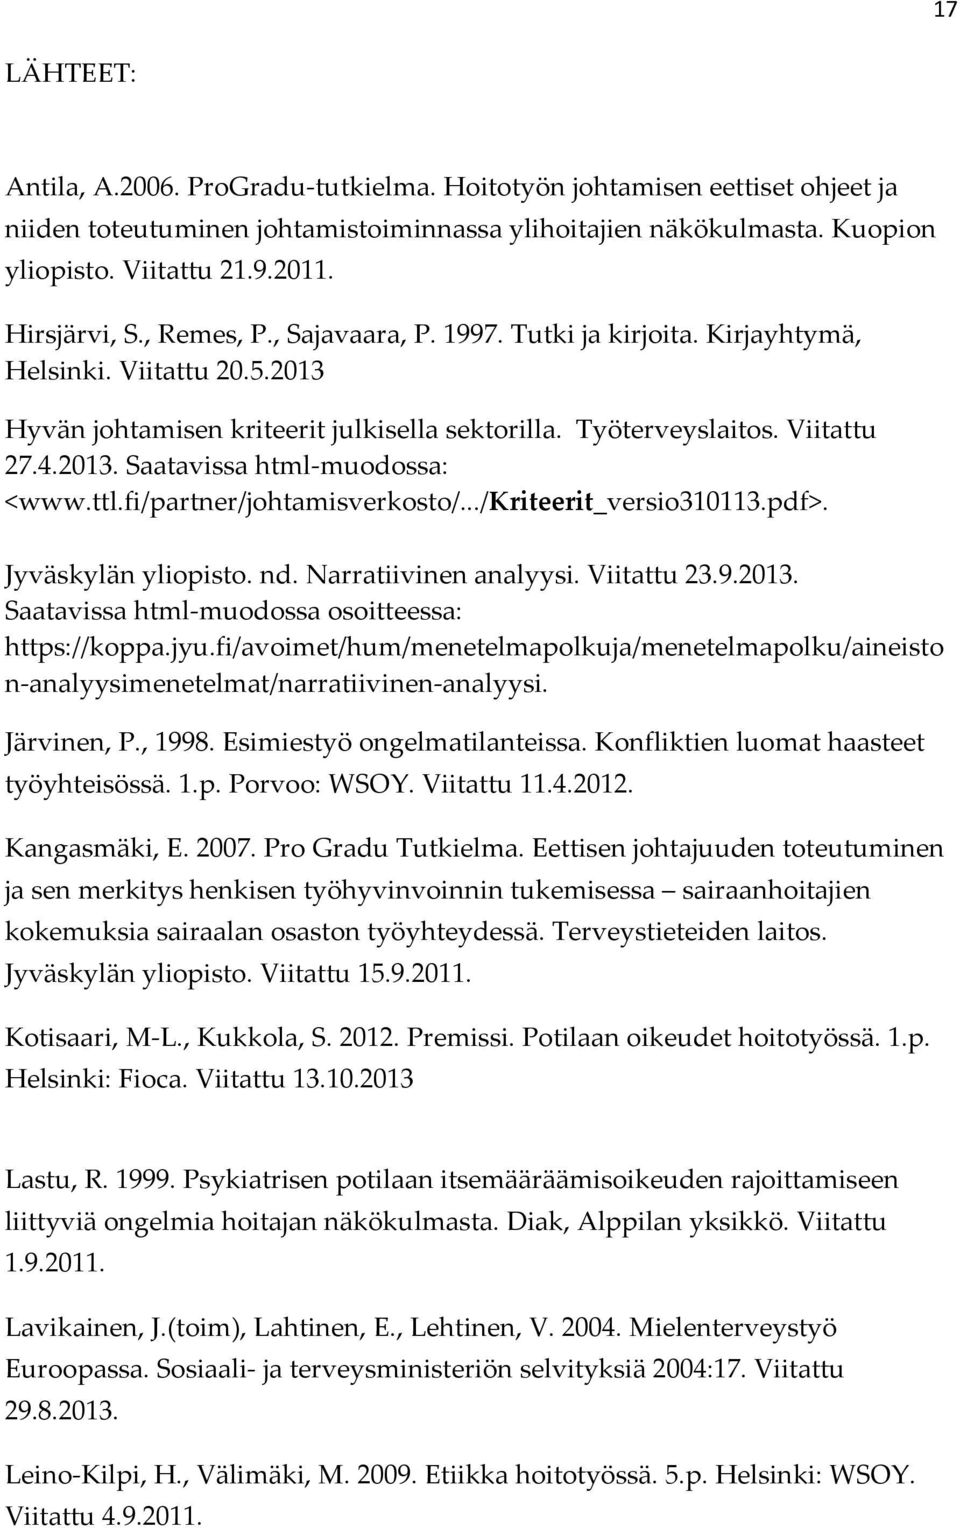 ttl.fi/partner/johtamisverkosto/.../kriteerit_versio310113.pdf>. Jyväskylän yliopisto. nd. Narratiivinen analyysi. Viitattu 23.9.2013. Saatavissa html-muodossa osoitteessa: https://koppa.jyu.